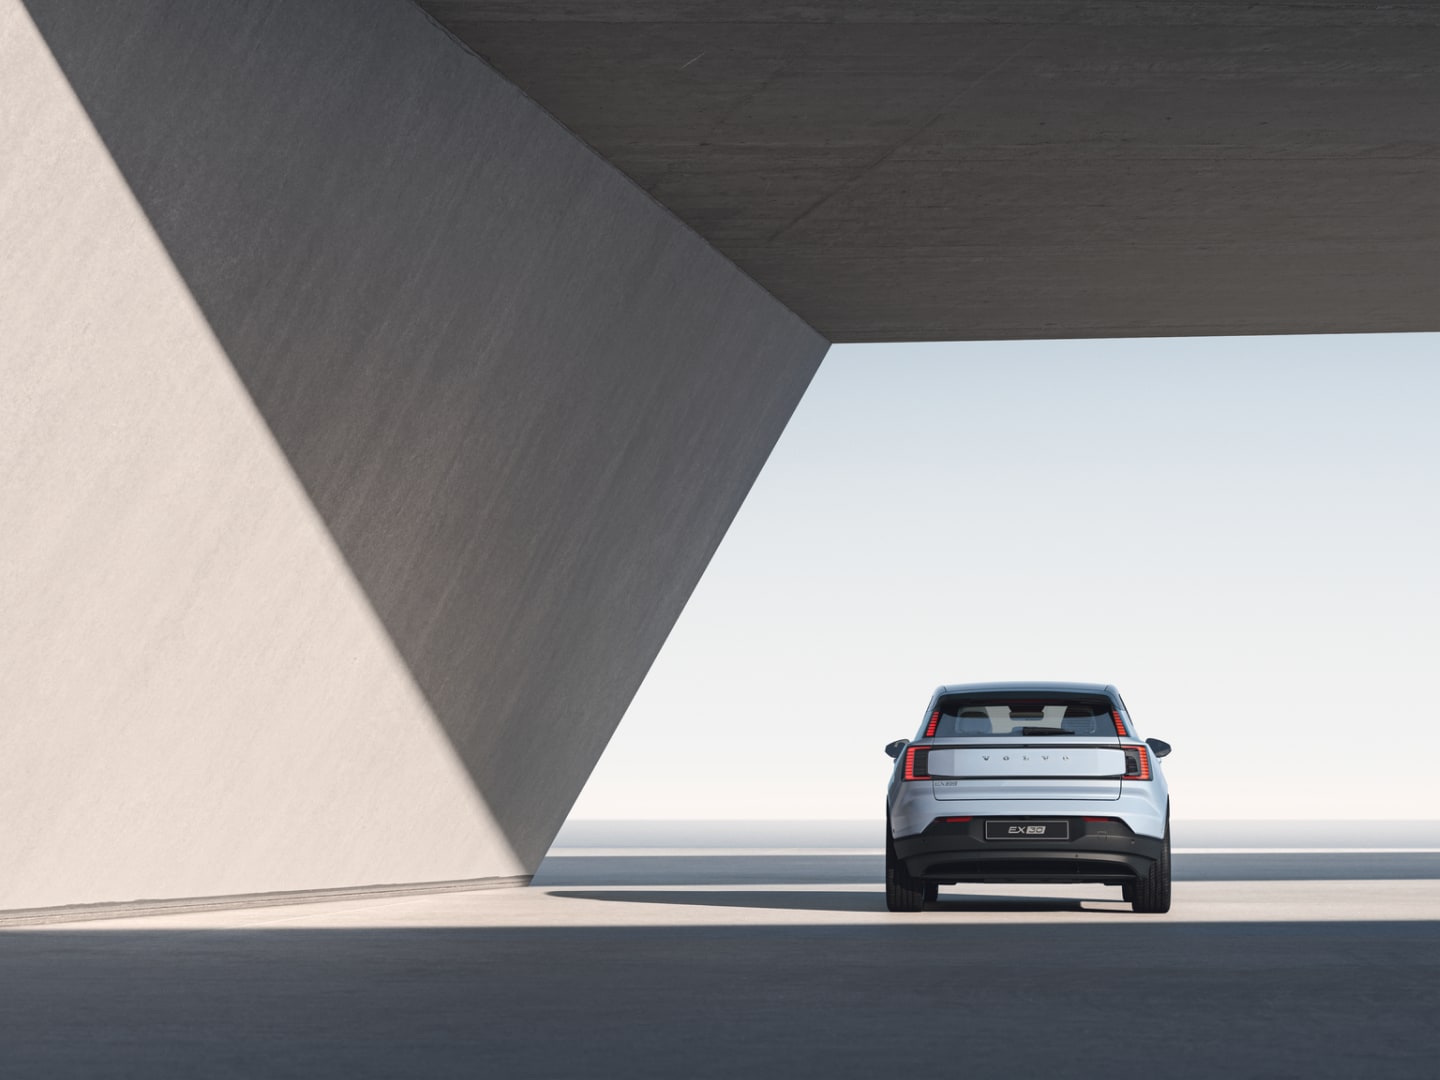 Широкоъгълно изображение на задната част на Volvo EX30, паркирано под отворена бетонна конструкция и лъчи от слънчева светлина.